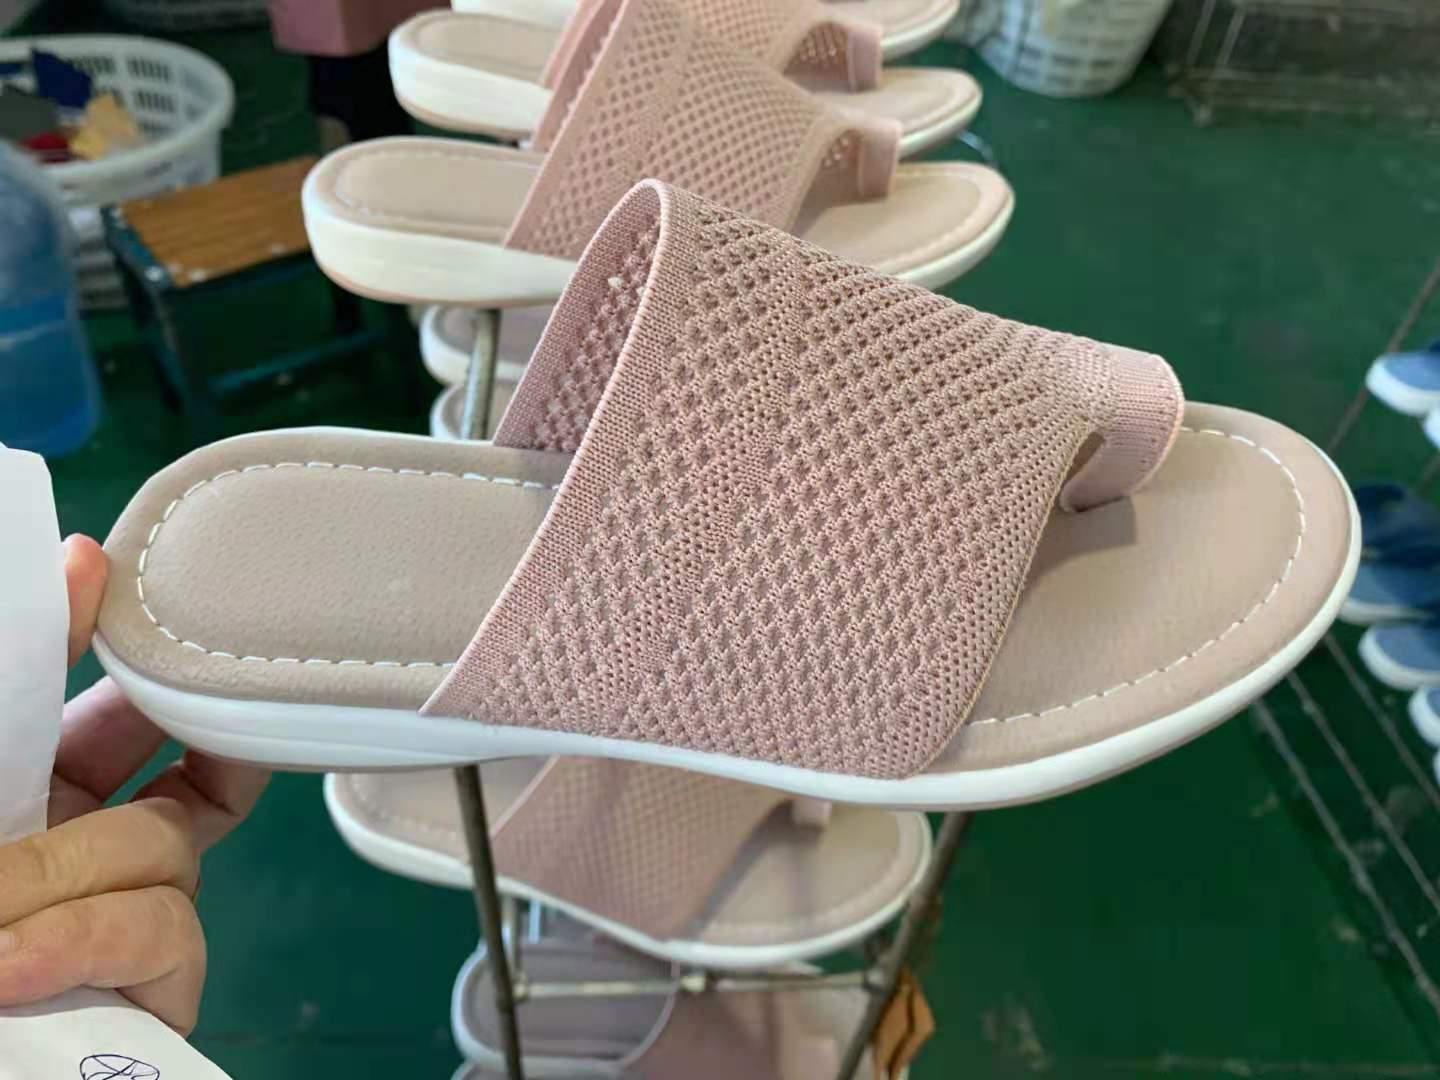 Zapatos de playa al aire libre con punta abierta de malla Casual Lady Slides - MXbueno